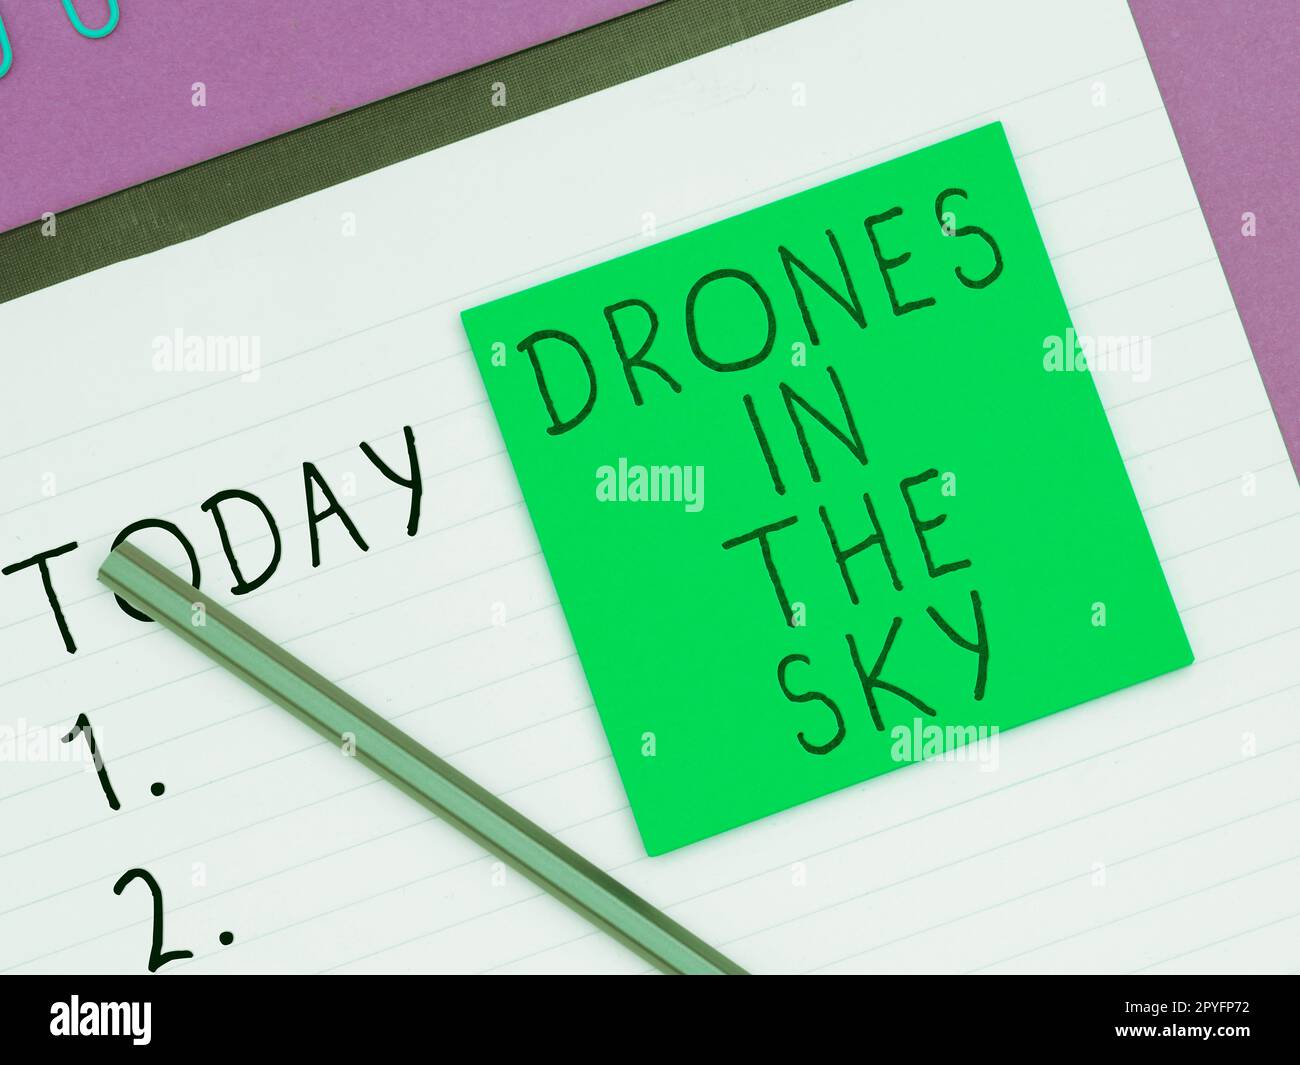 Scrittura a mano del testo droni nel cielo. Fotografia concettuale moderna tecnologia aerea fotocamera avanzata Foto Stock